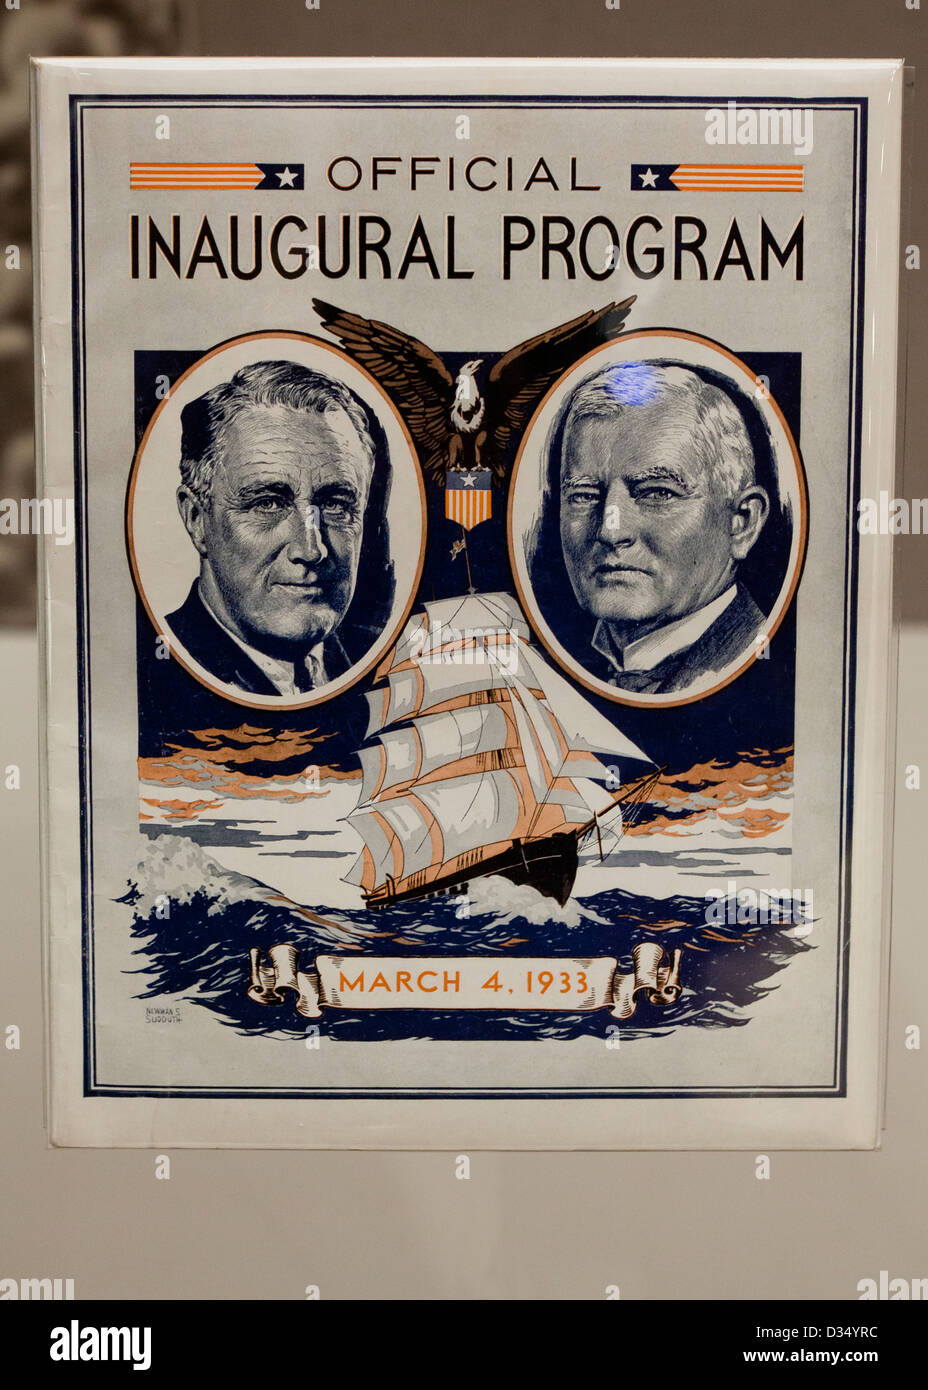 Roosevelt et Garner programme d'inauguration officielle Banque D'Images